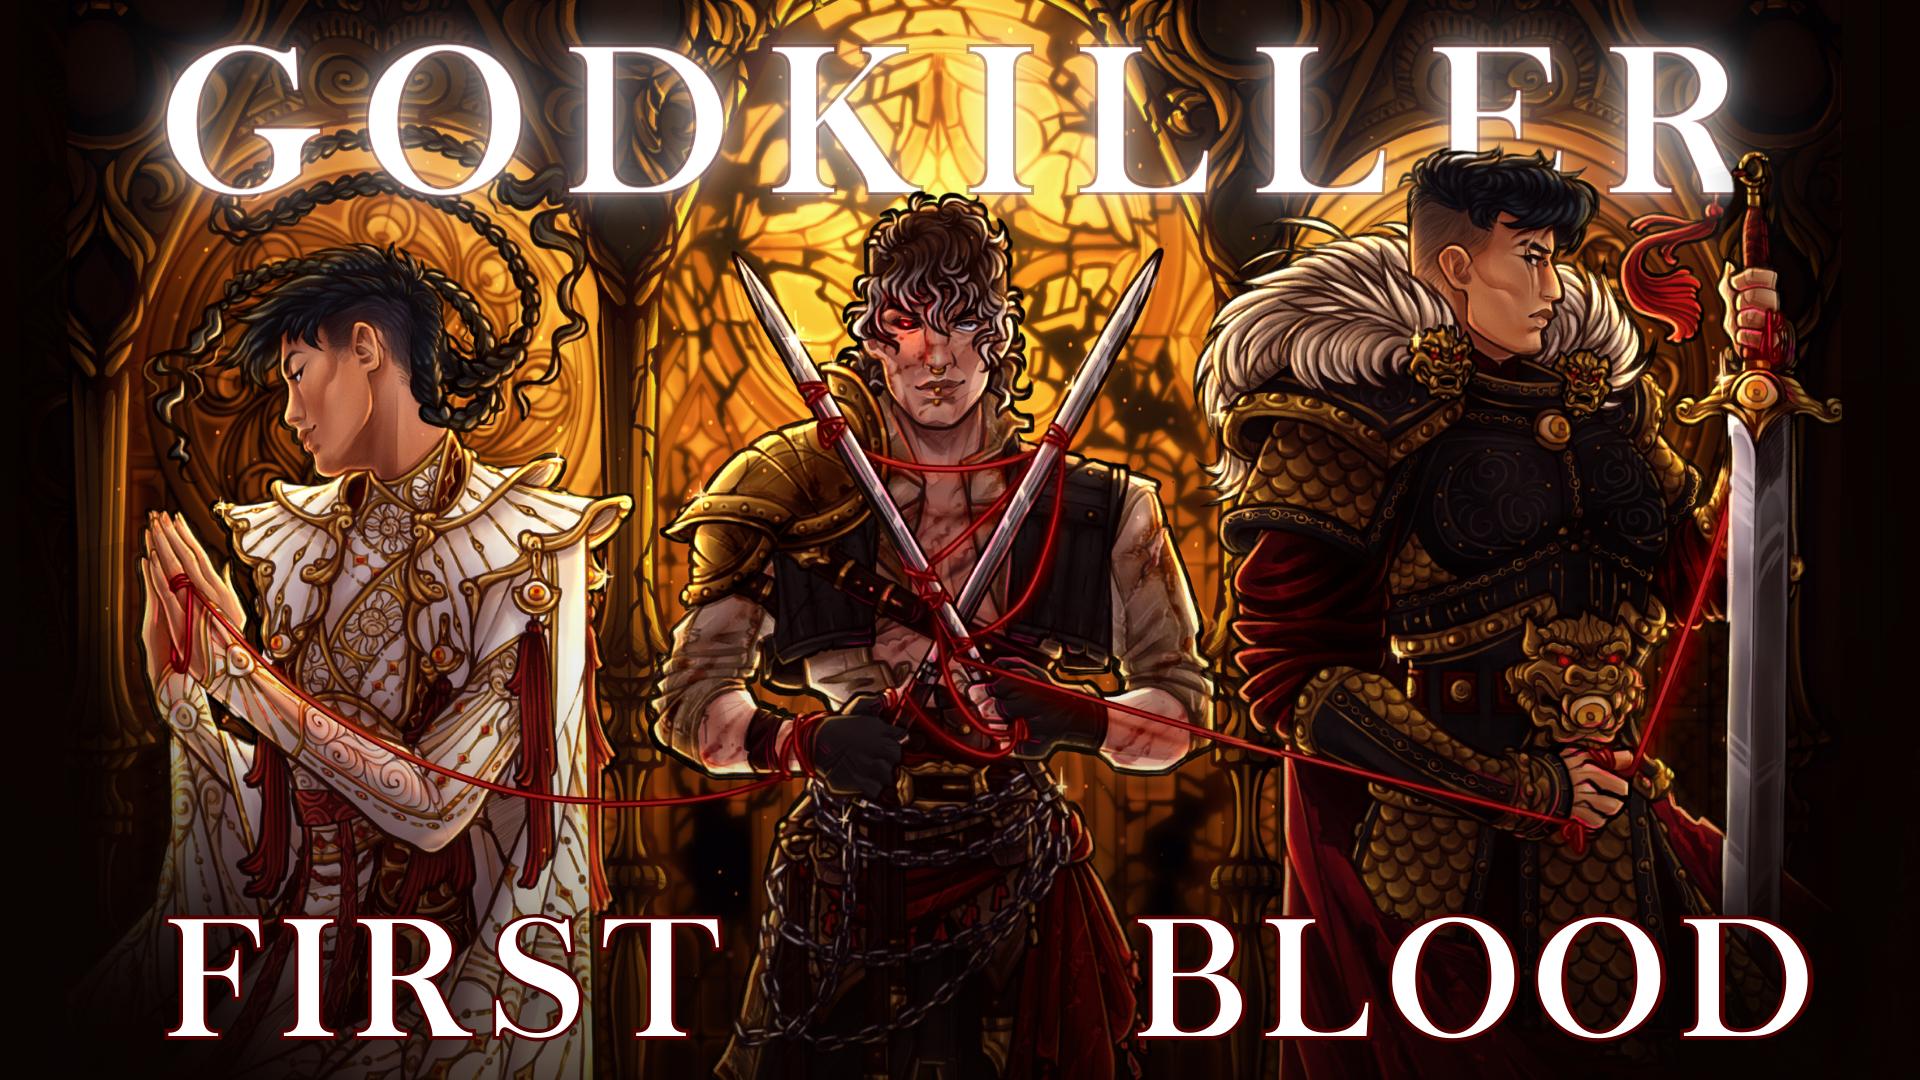 GODKILLER: First Blood